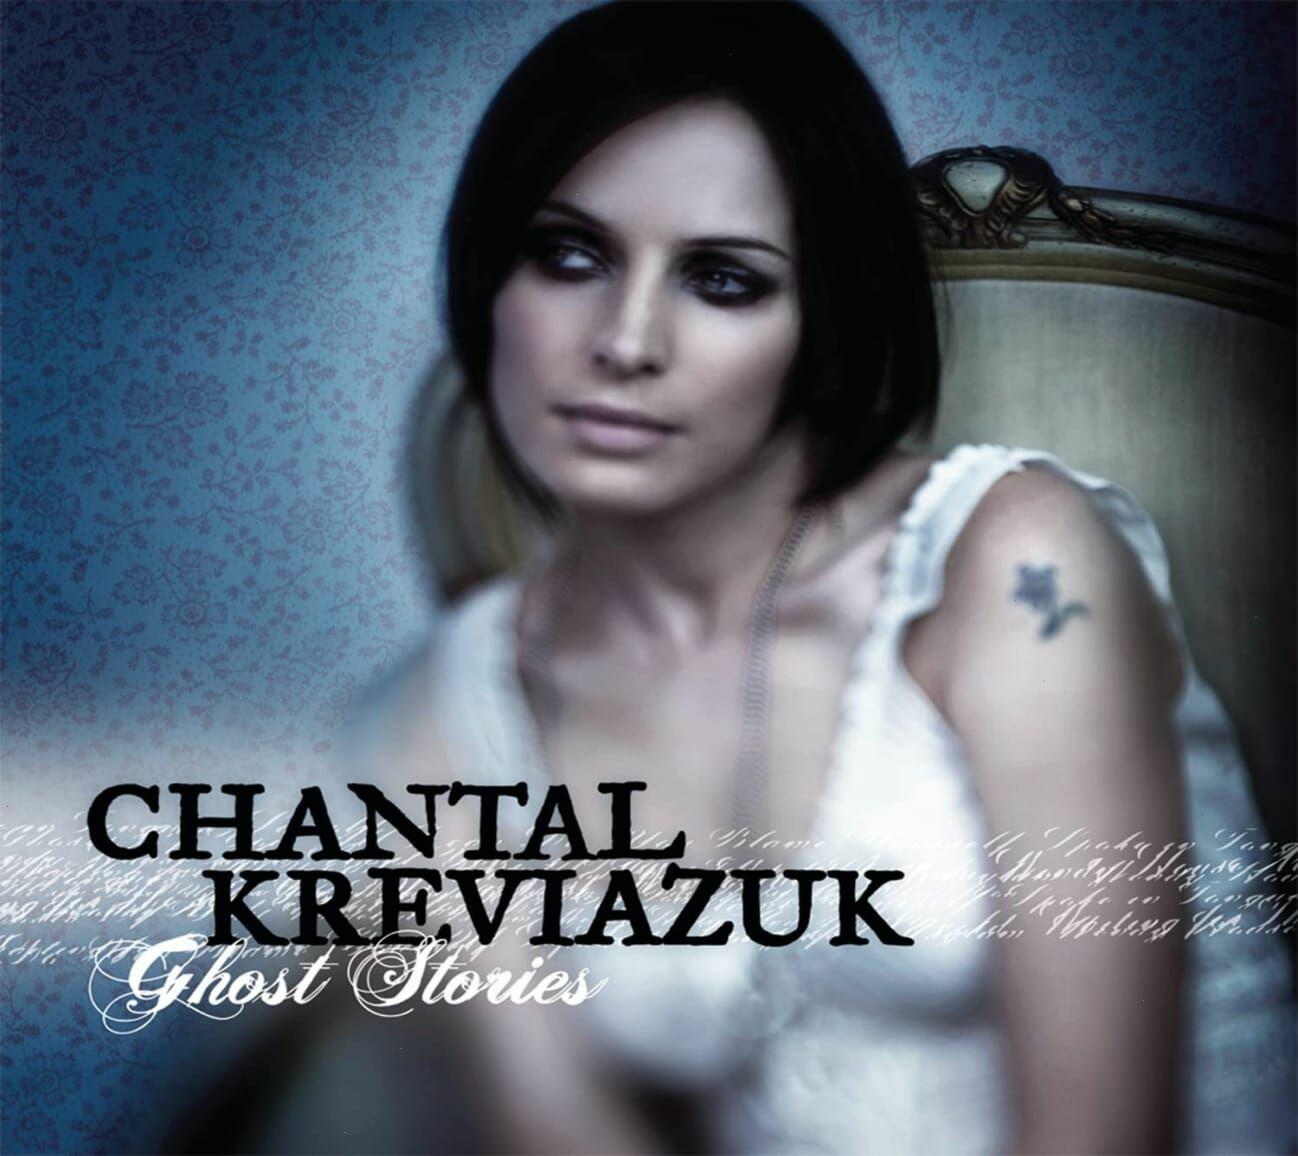 Chantal Kreviazuk – Ghost Stories (CD) on MovieShack